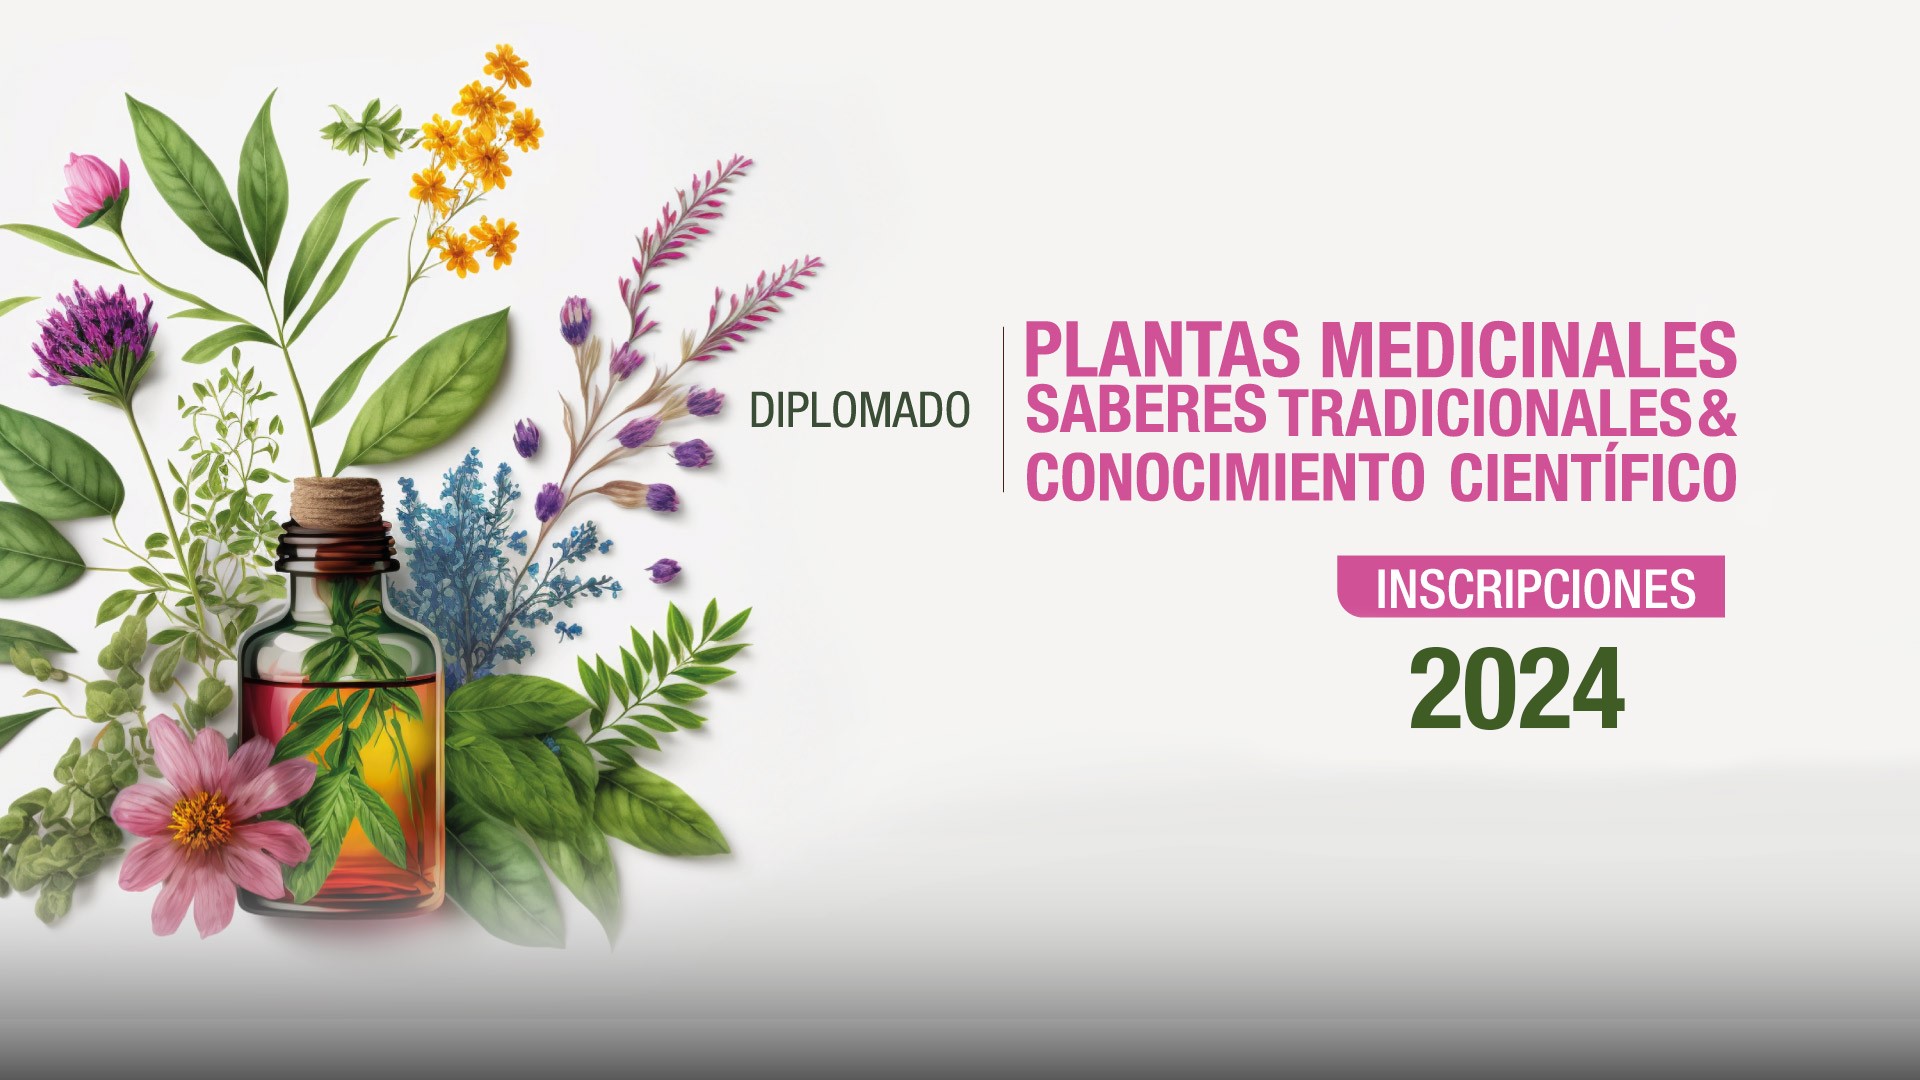 Hasta el 16 de febrero estarán abiertas las inscripciones para el Diplomado en Plantas Medicinales